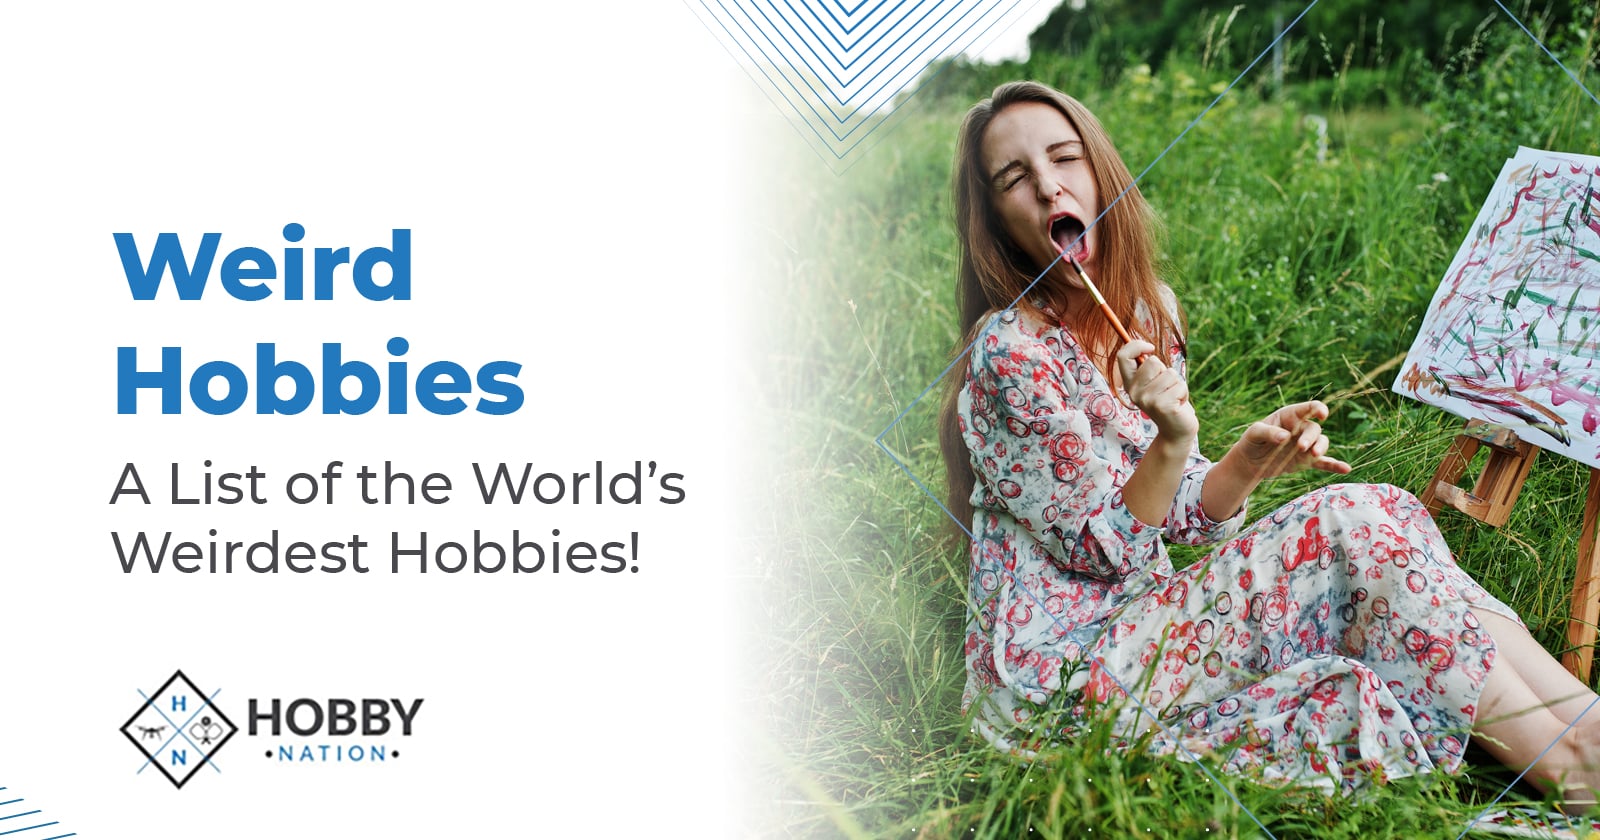 Weird Hobbies – A List of the World's Weirdest Hobbies!